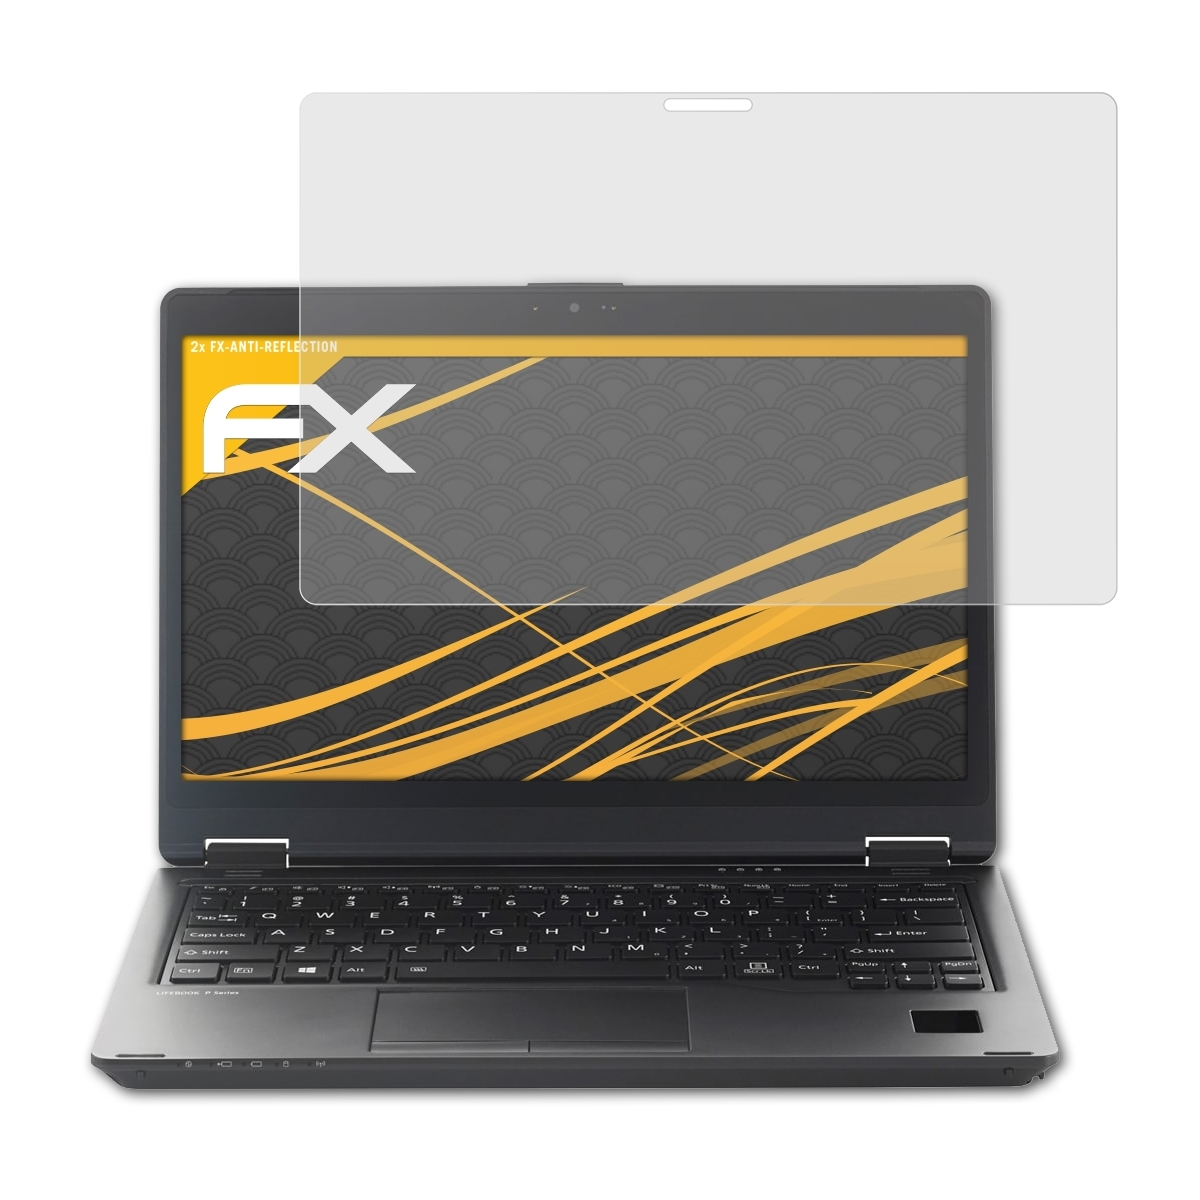 ATFOLIX 2x FX-Antireflex Displayschutz(für P728) Lifebook Fujitsu